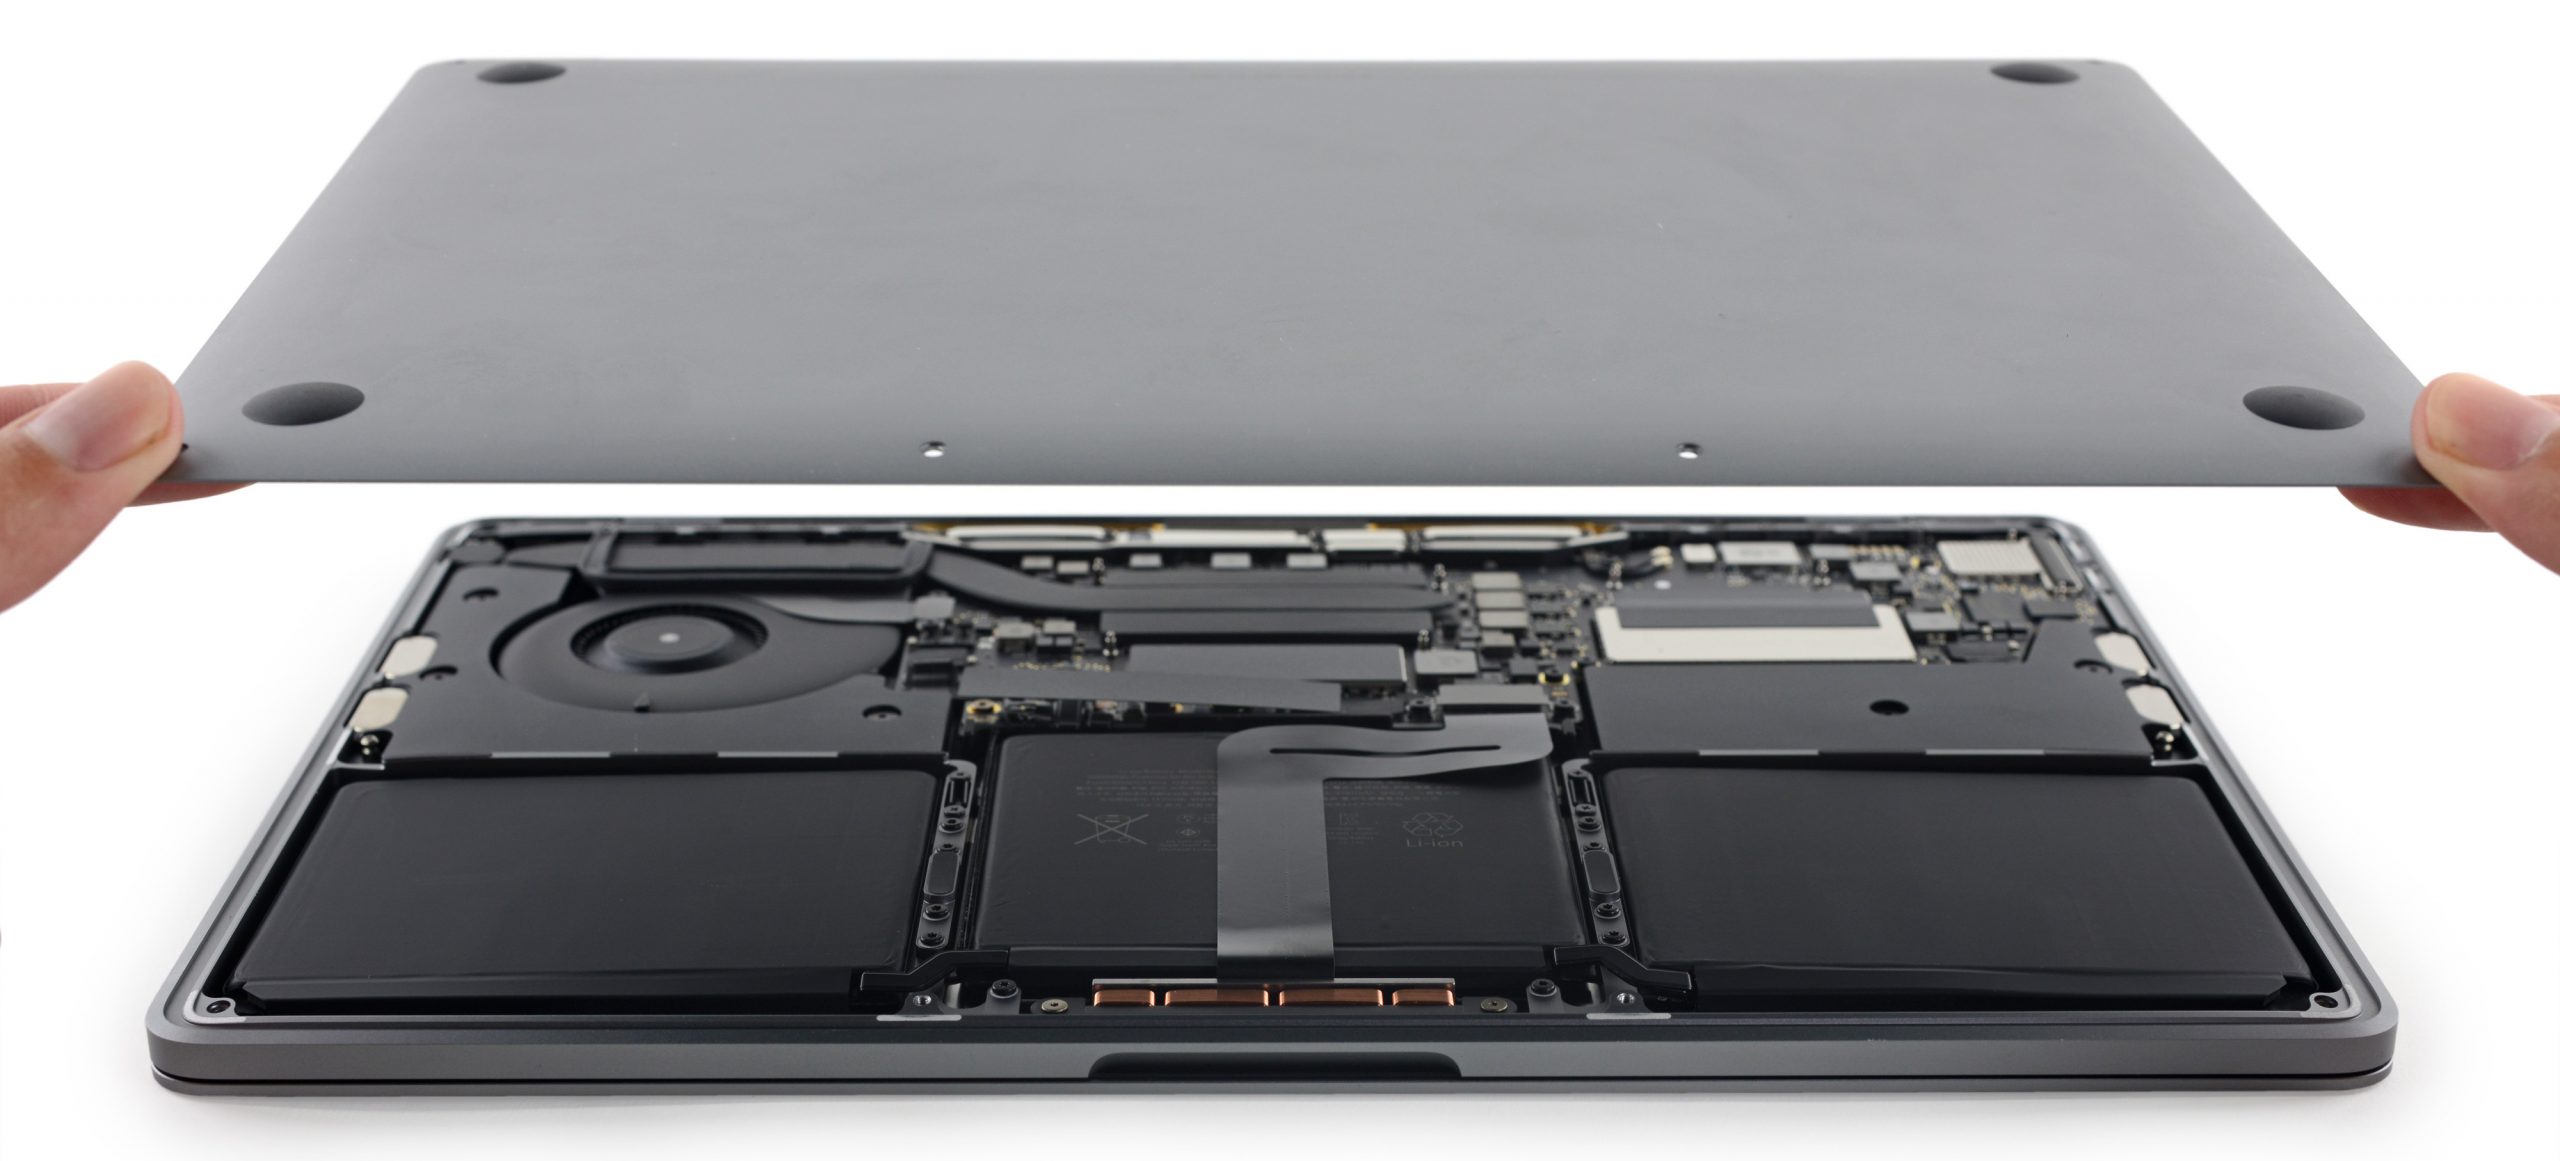 Uus MacBook Pro annab iFixiti käest üle: parandusi on veelgi vähem, kuid vähemalt on sellel ajaloo kiireim SSD.